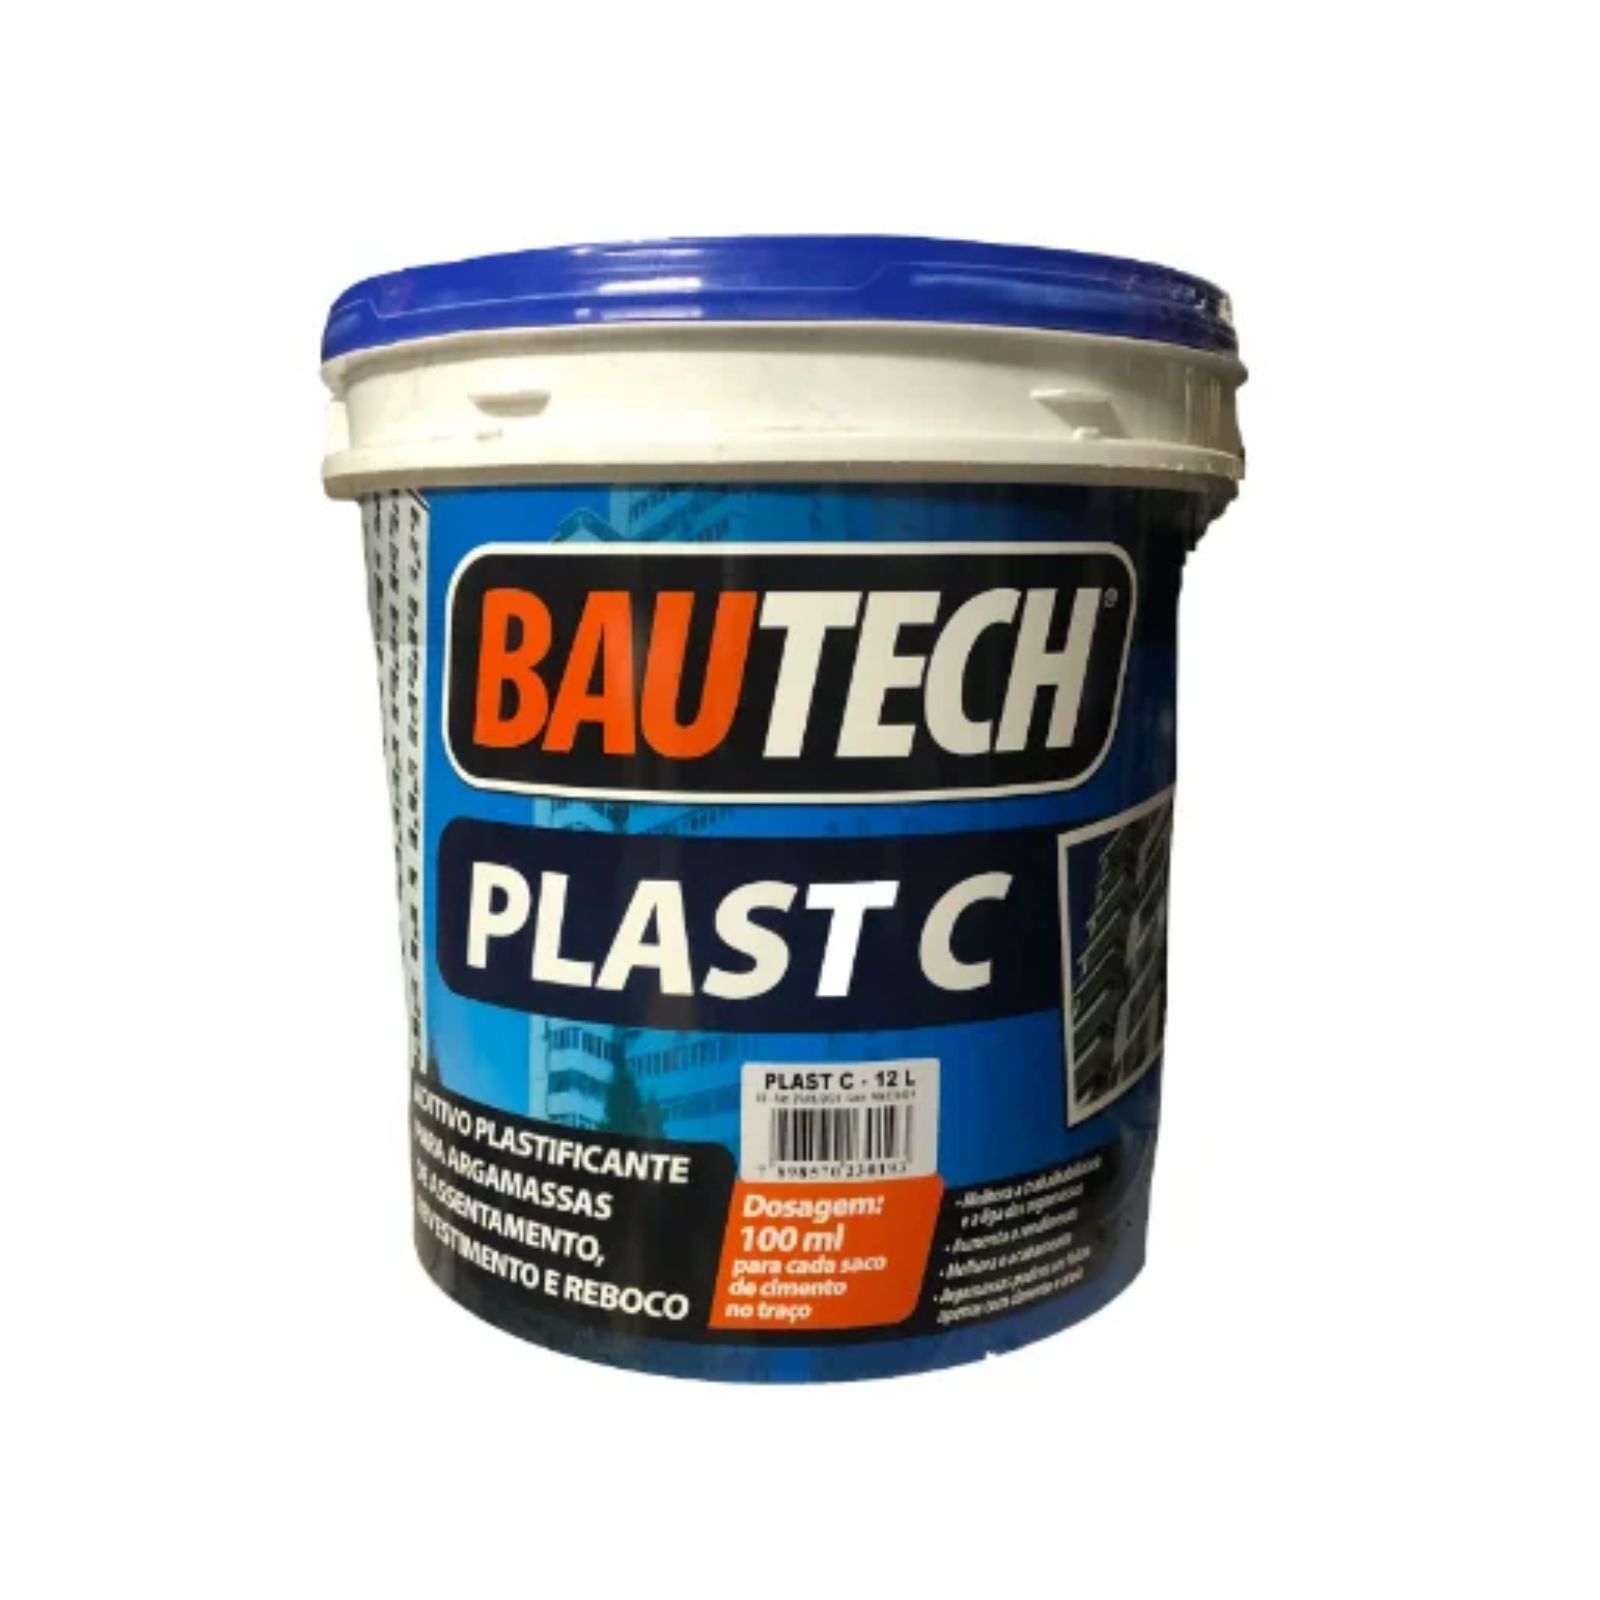 Aditivo plastificante para argamassa Bautech Plast C 12L